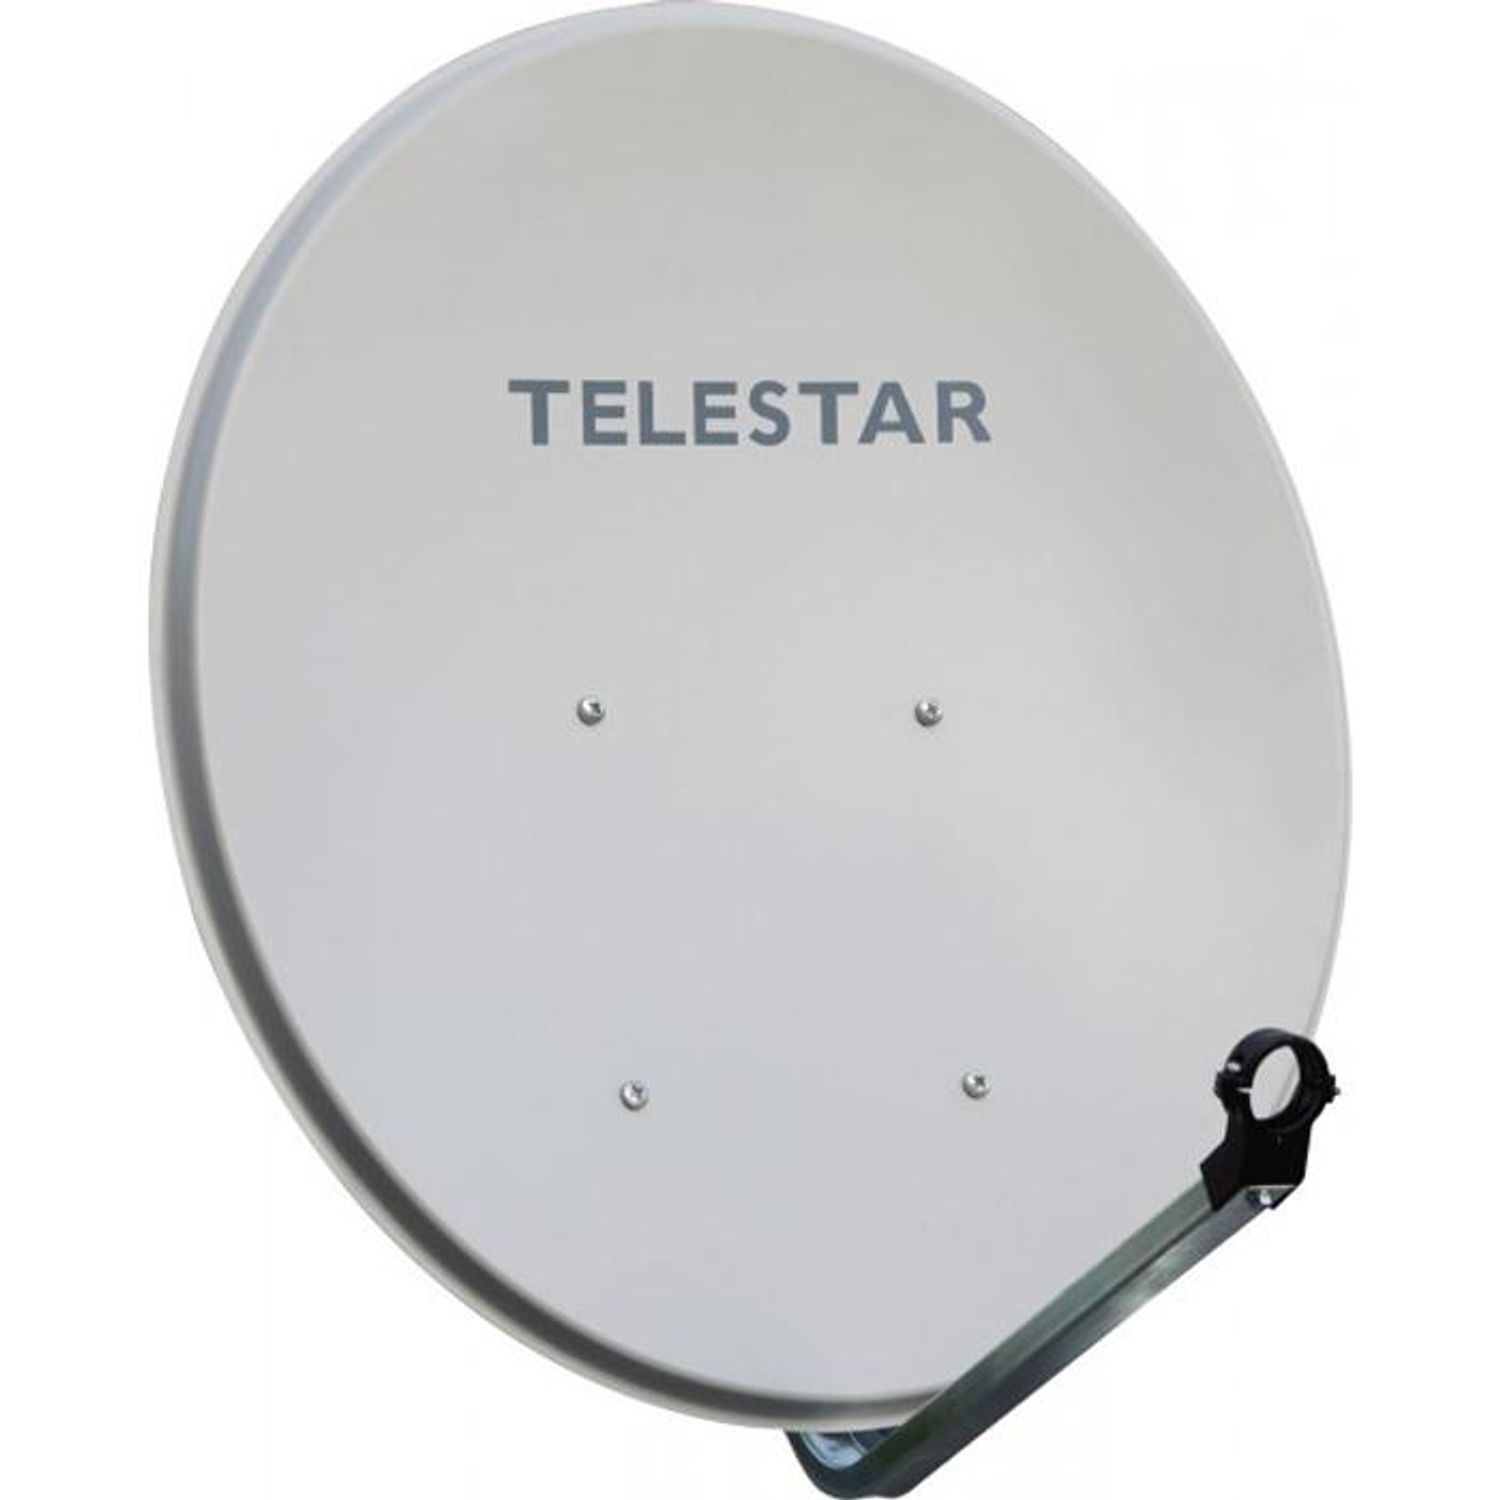 TELESTAR DIGIRAPID 60 S Sat-Antenne